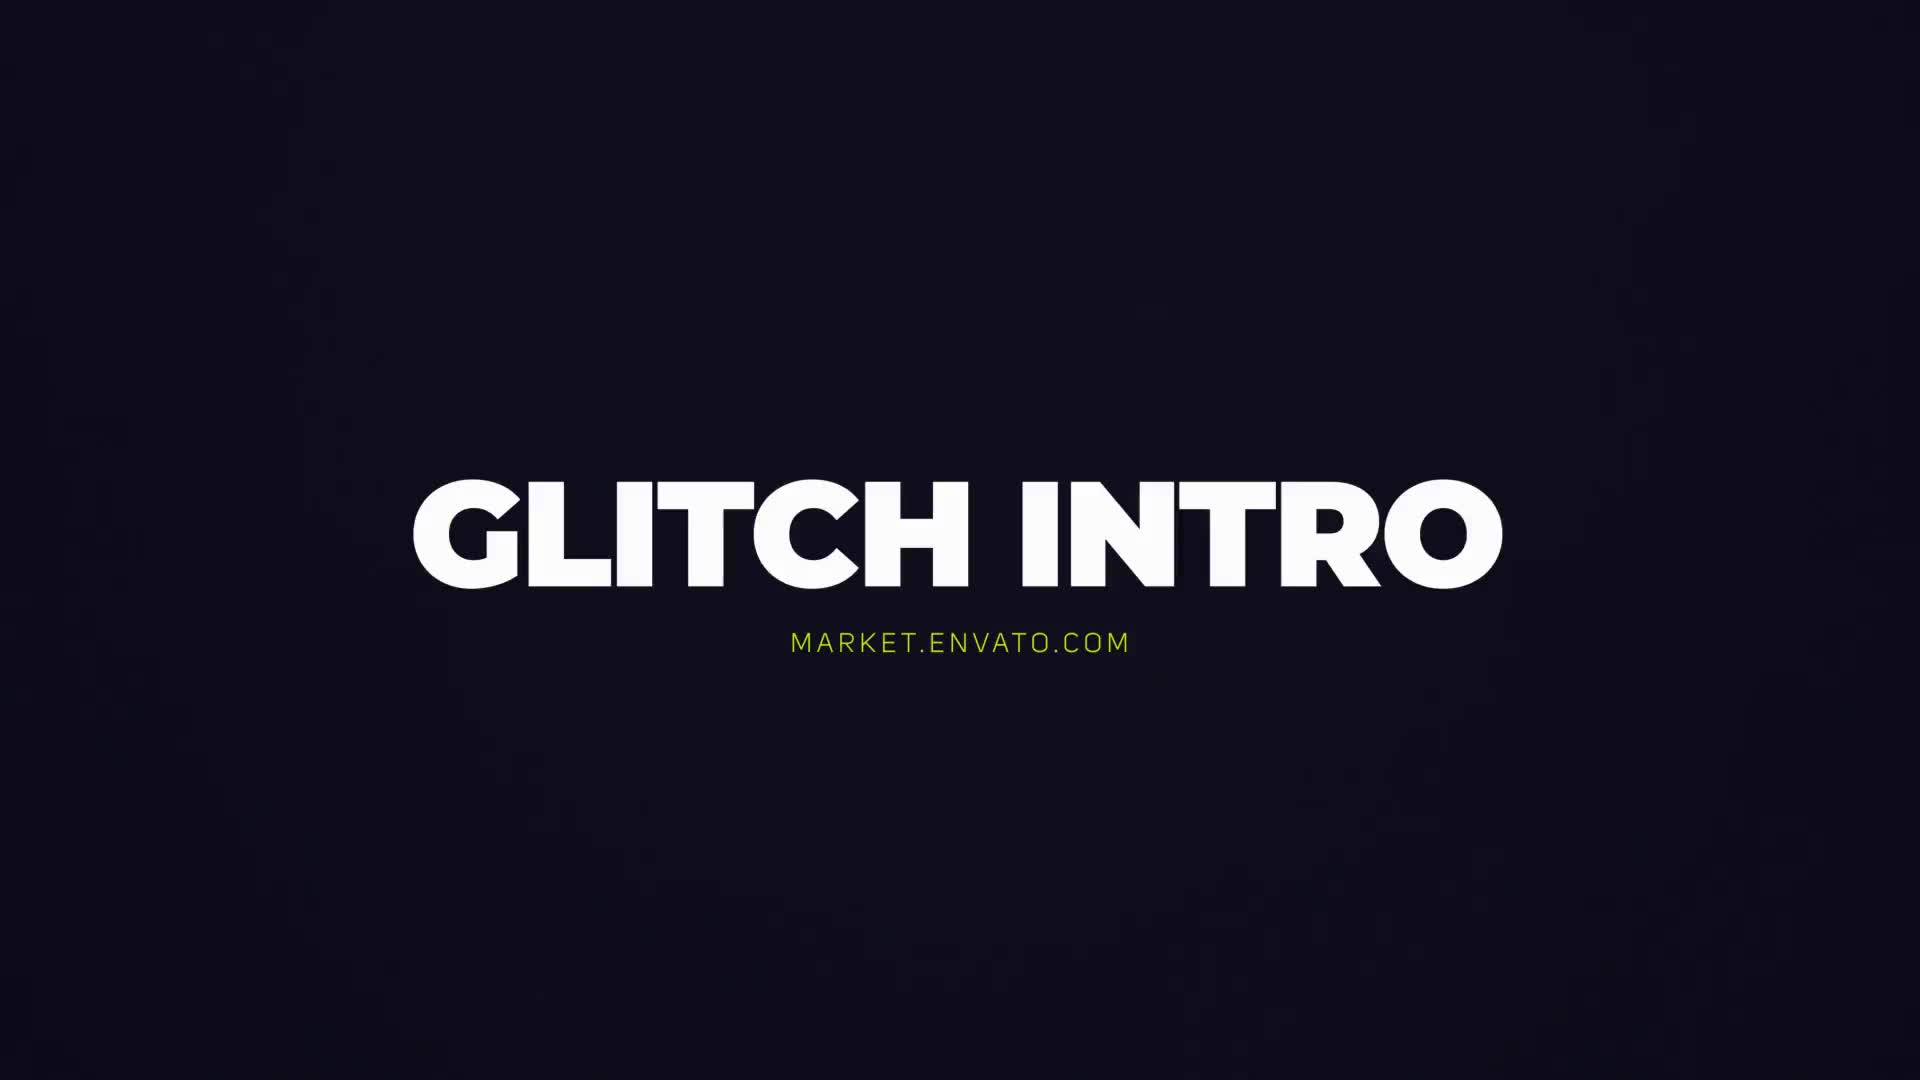 Glitch Intro Mogrt Videohive 22698598 Premiere Pro Image 8